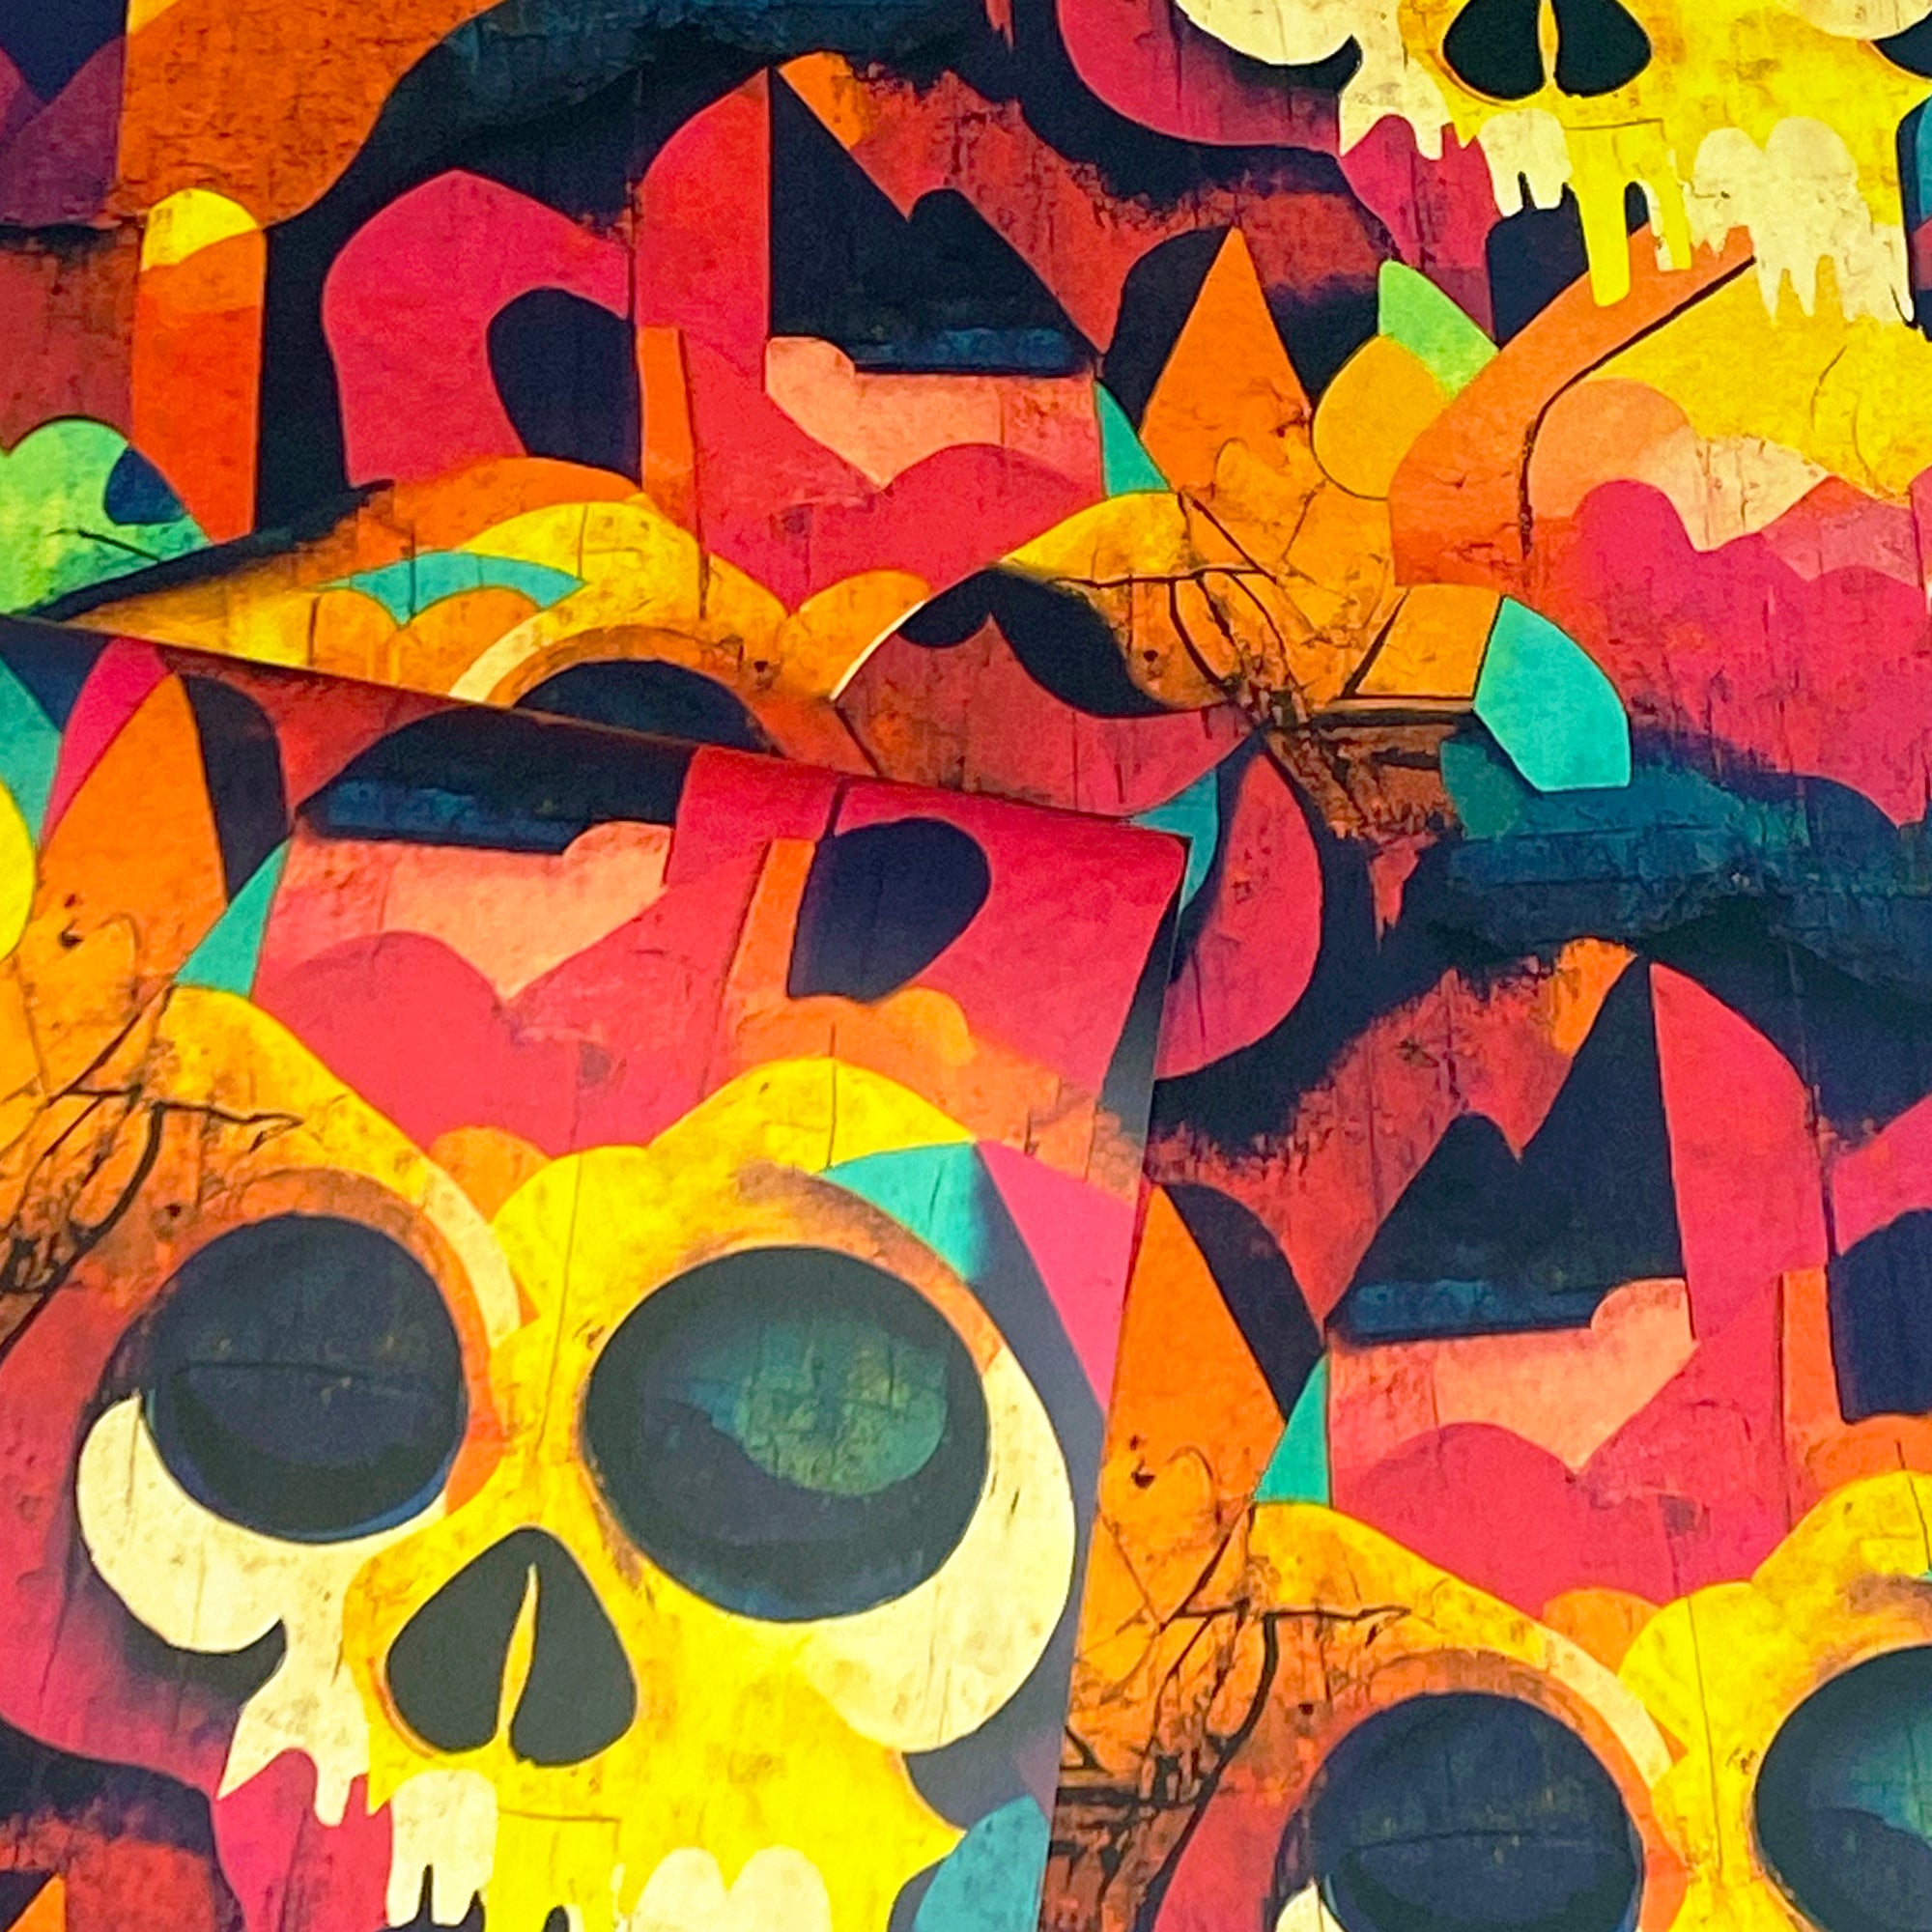 Skull Graffiti Multicoloured Wallpaper